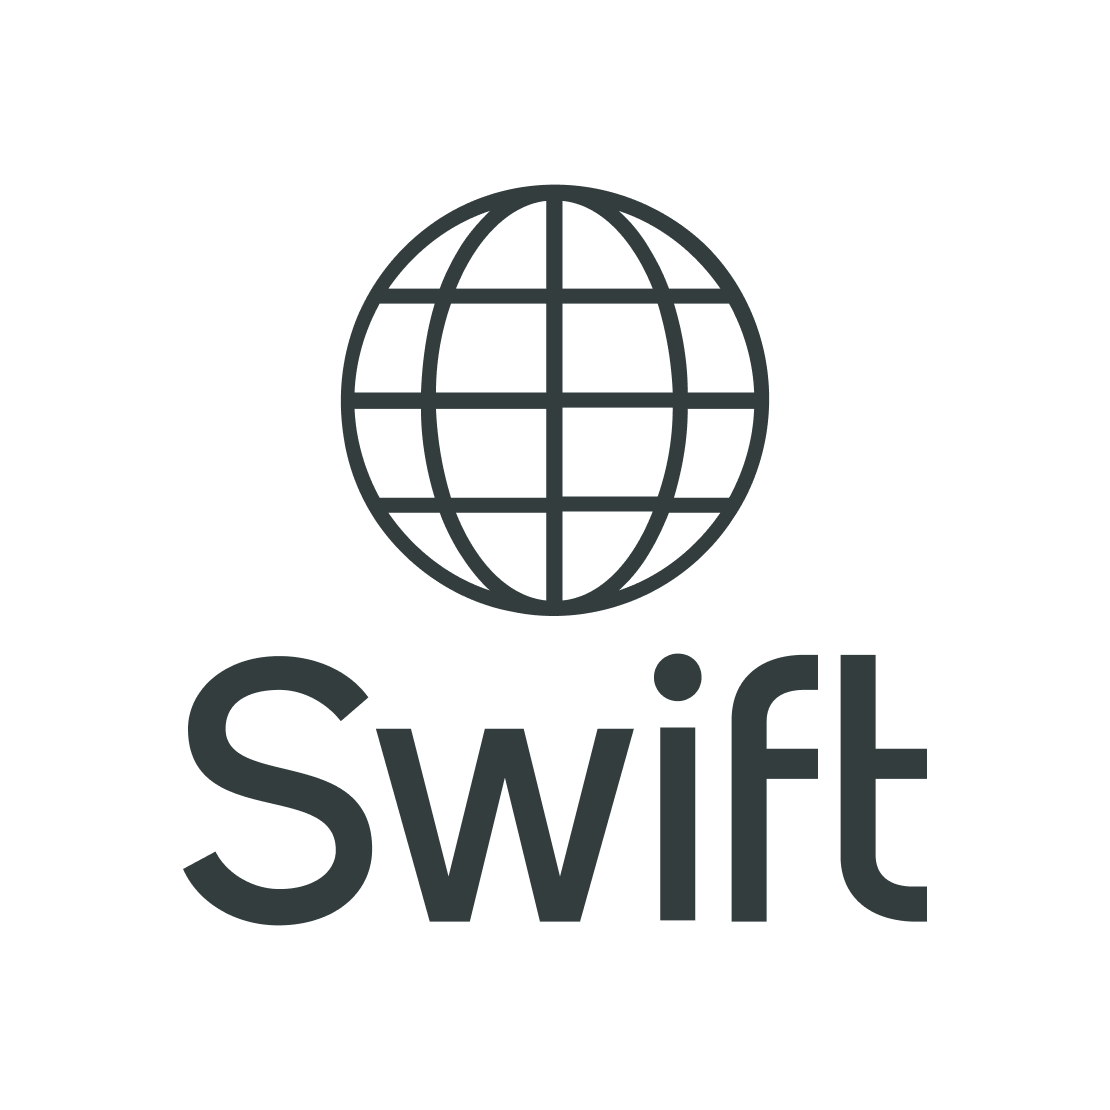 A logo of SWIFT